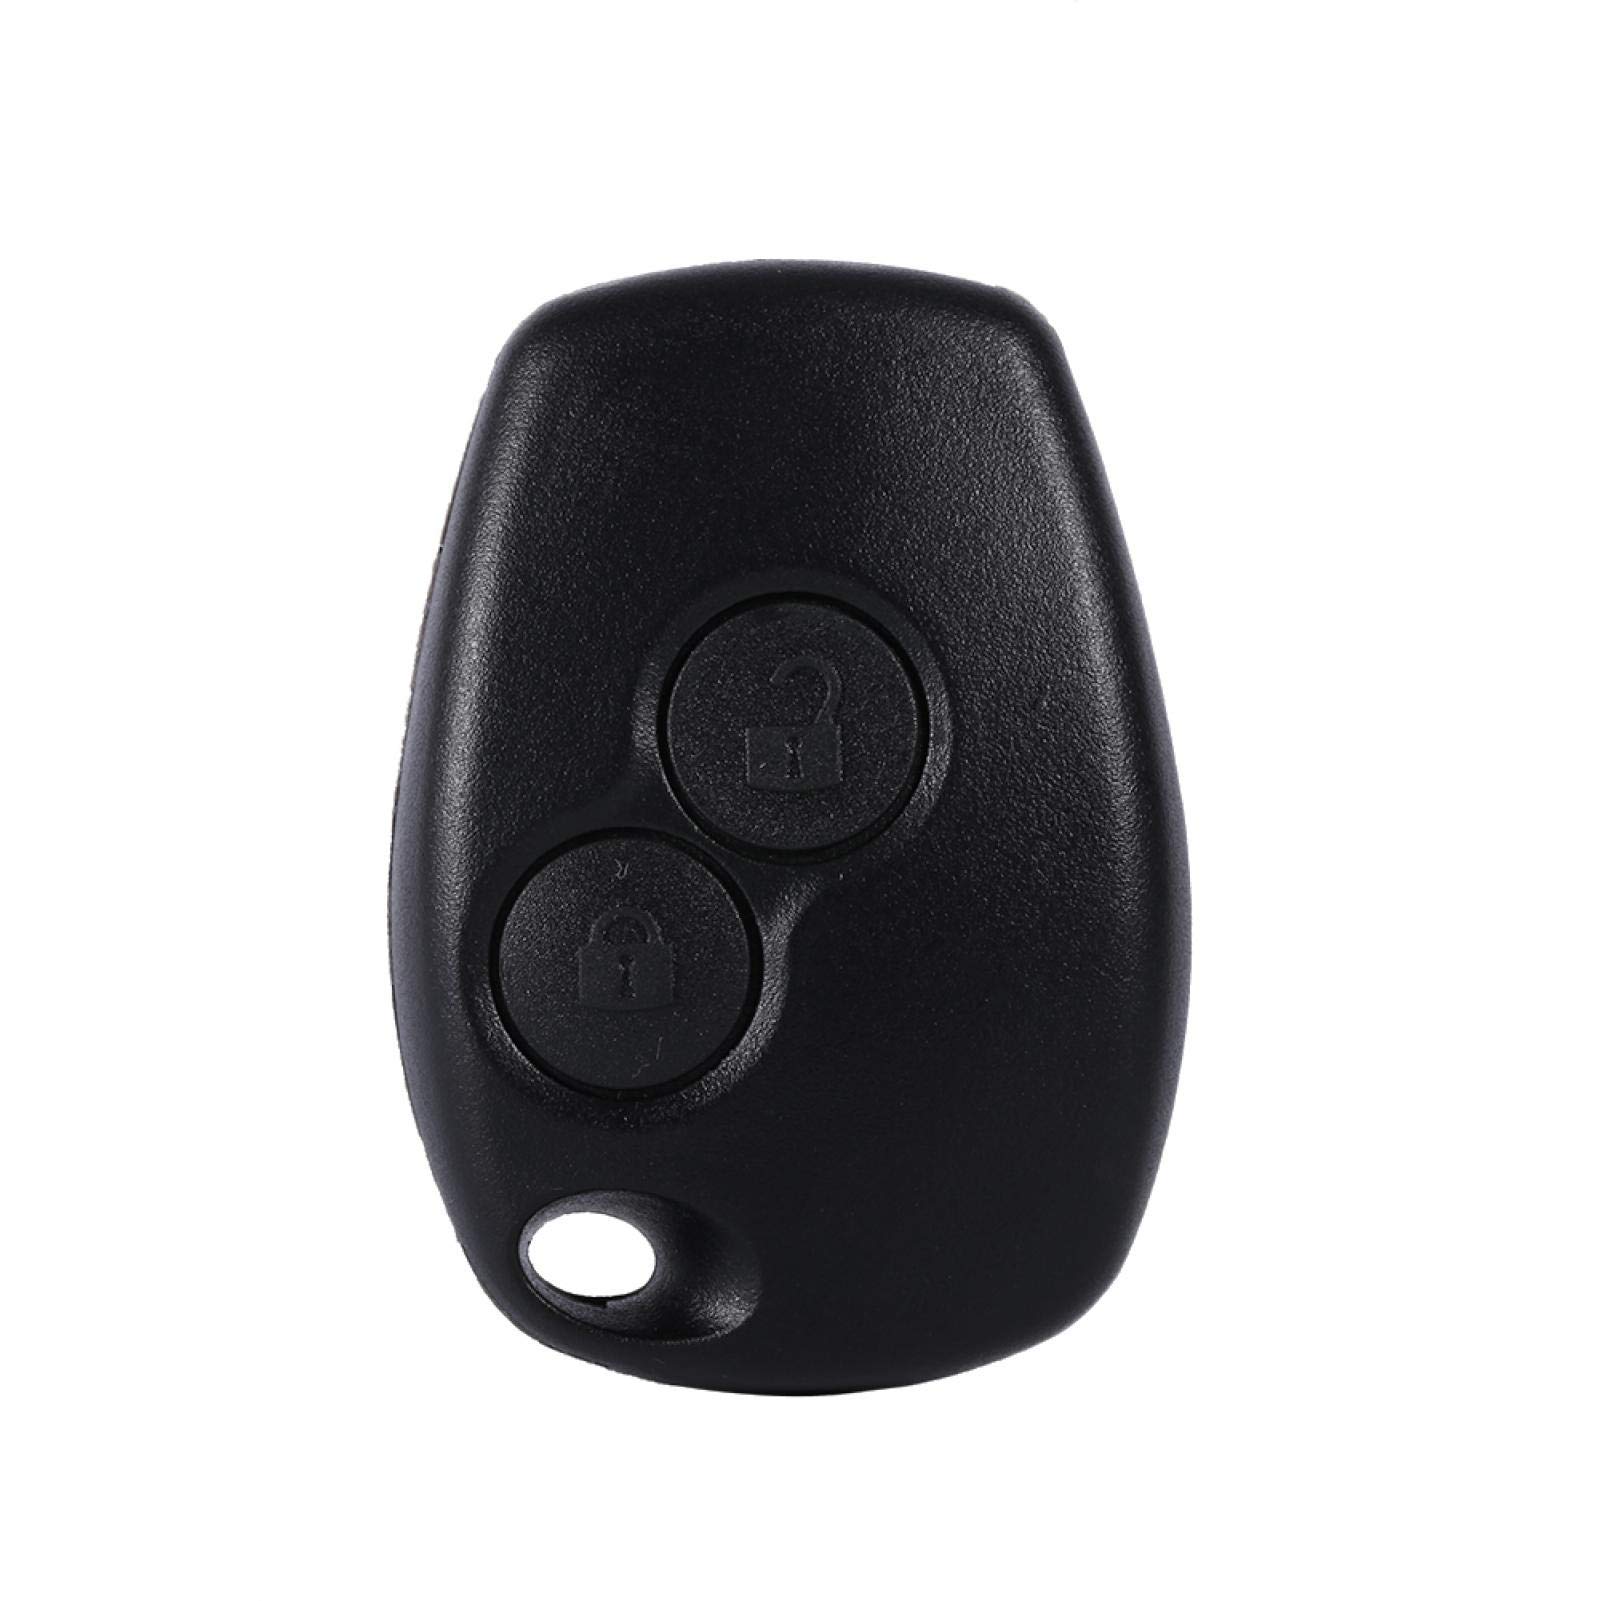 Schlüssel Gehäuse -- Clio 3 Schlüssel Gehäuse Fernbedienung 2 Tasten Auto Auto Schlüsselanhänger Shell Cover Case Für Kangoo Modus Master von Yctze